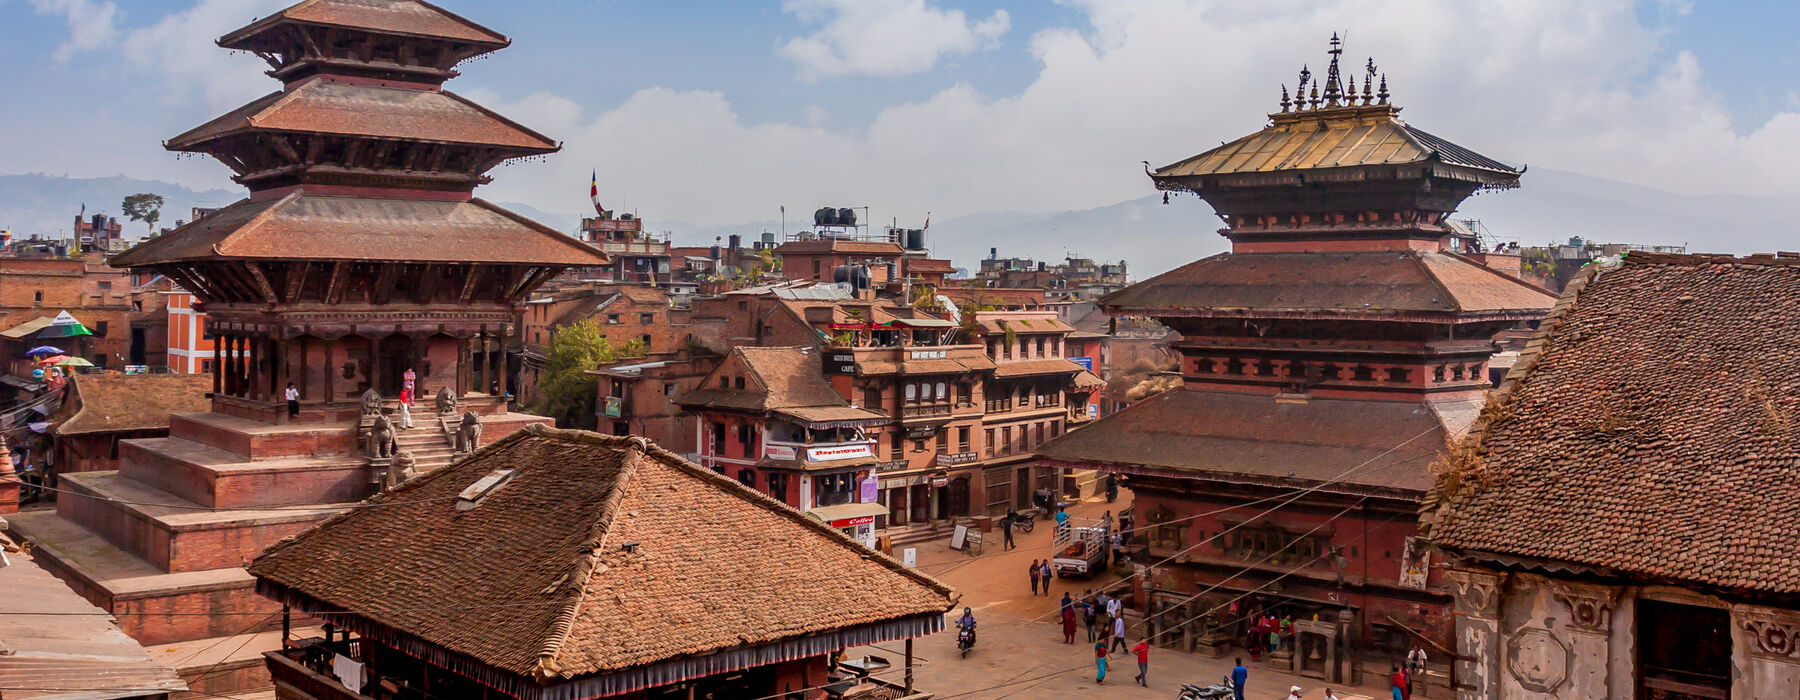 Nepal Kathmandu 4